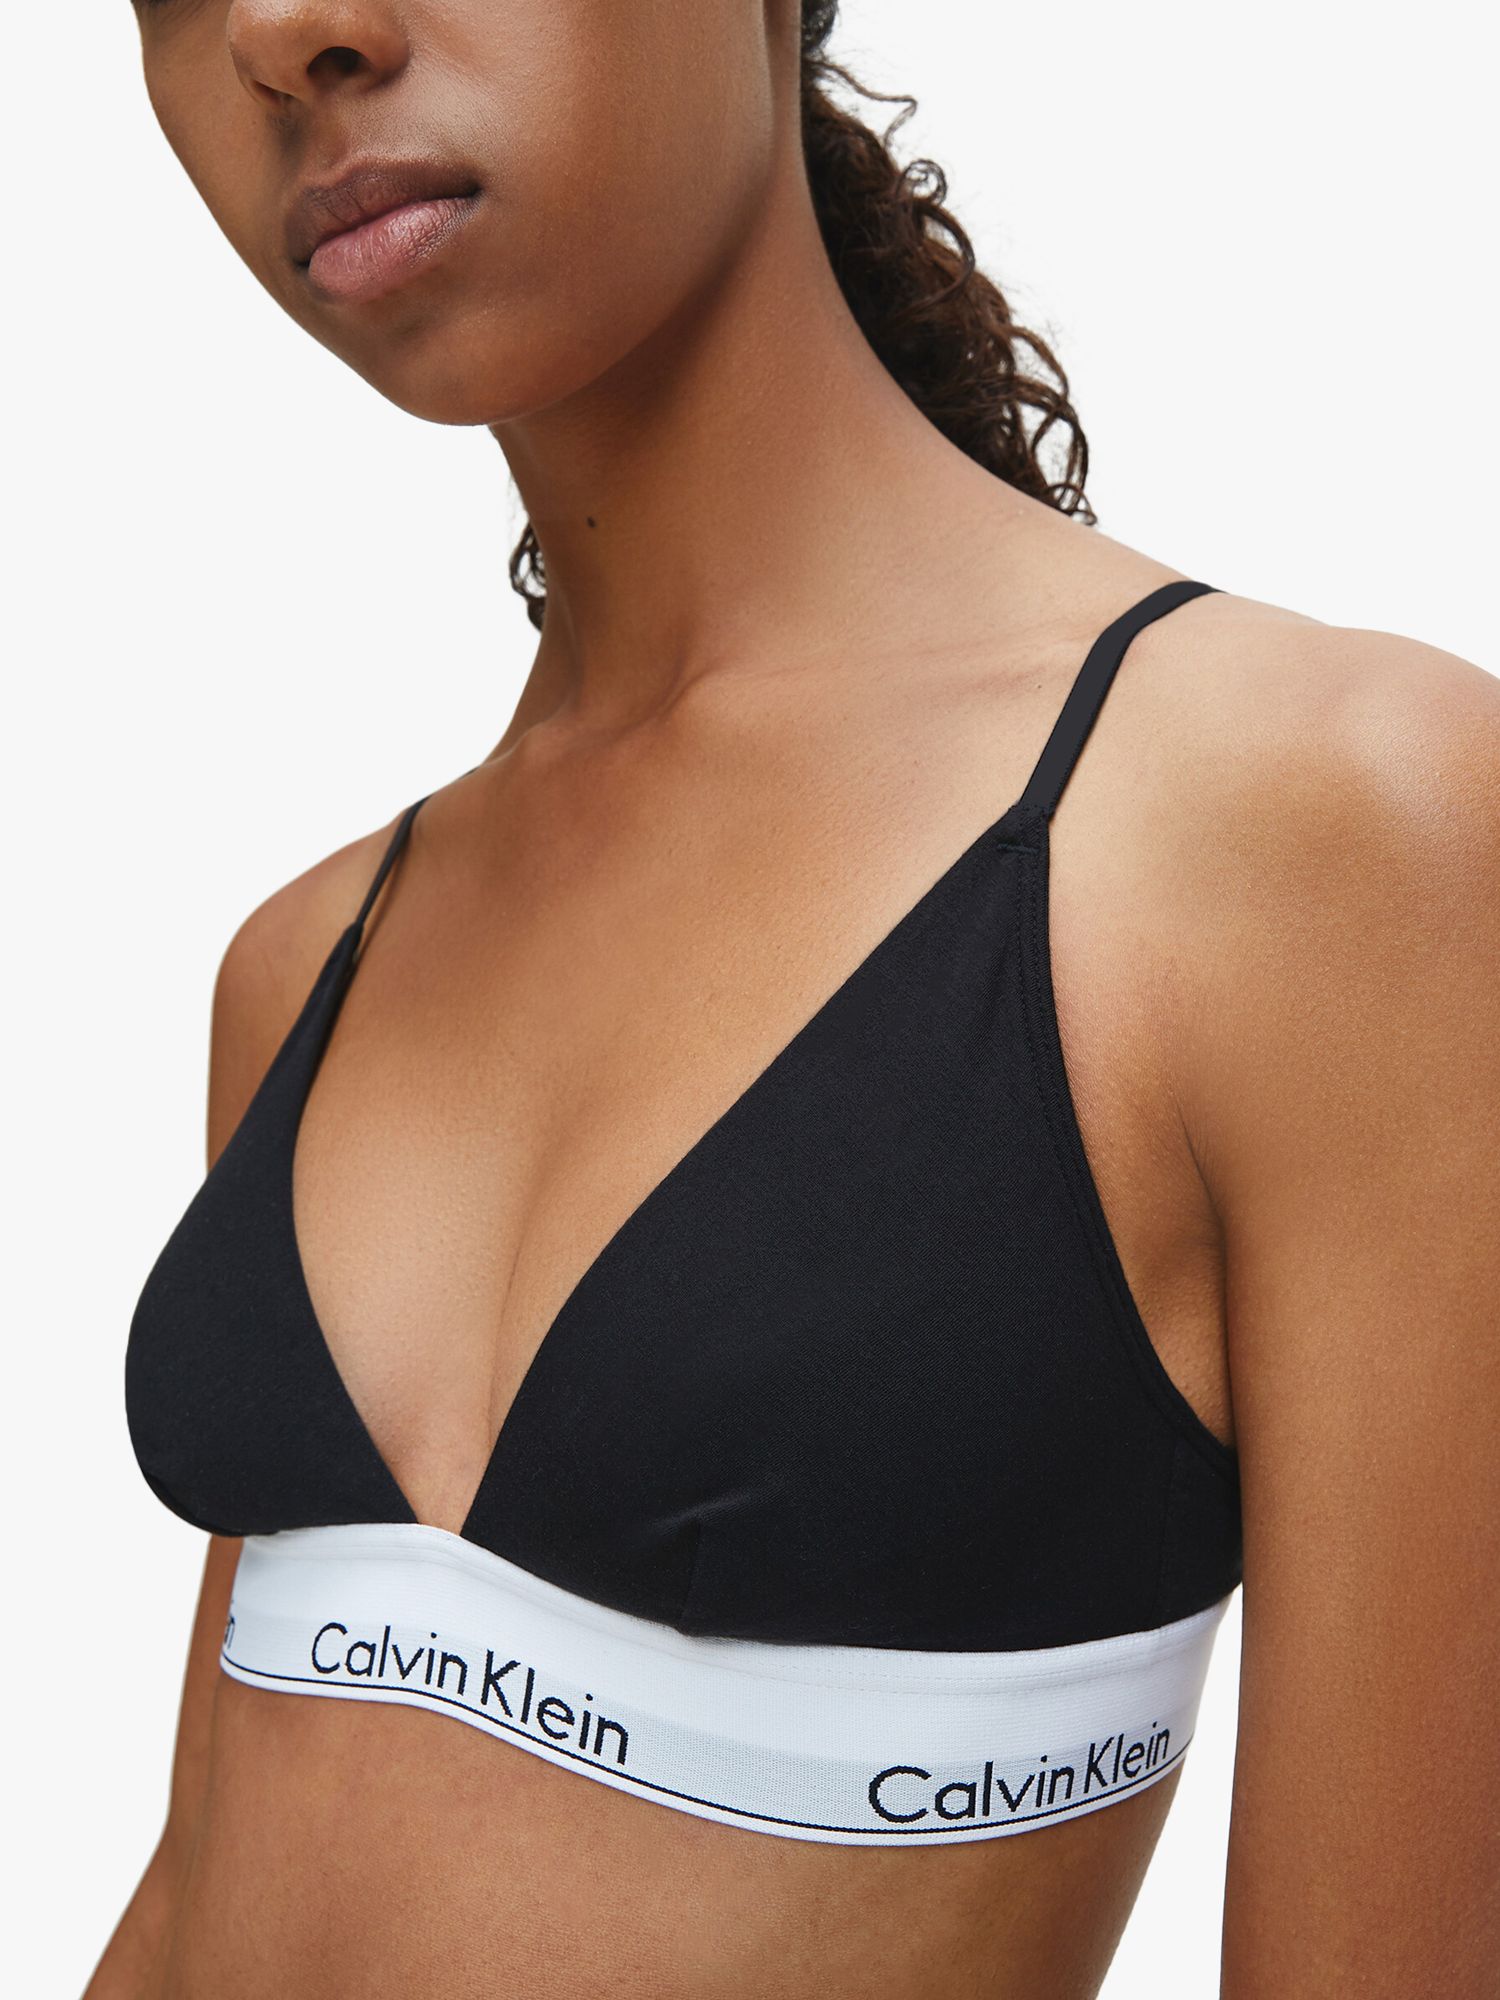 Calvin Klein Sports Bra Set – Comfy Nights